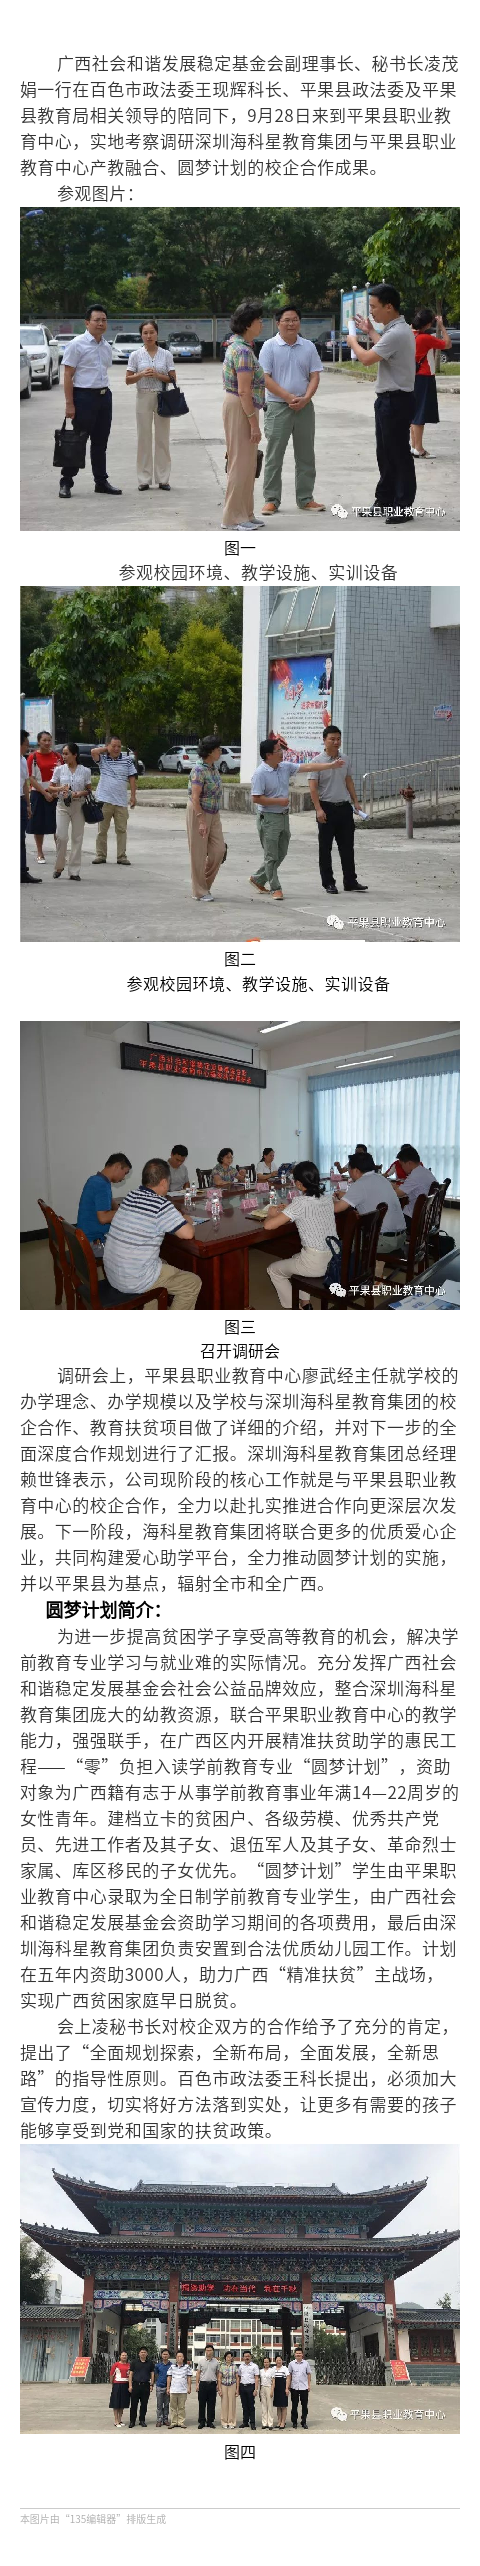 广西社会和谐发展稳定基金会到平果县职业教育中心考察调研